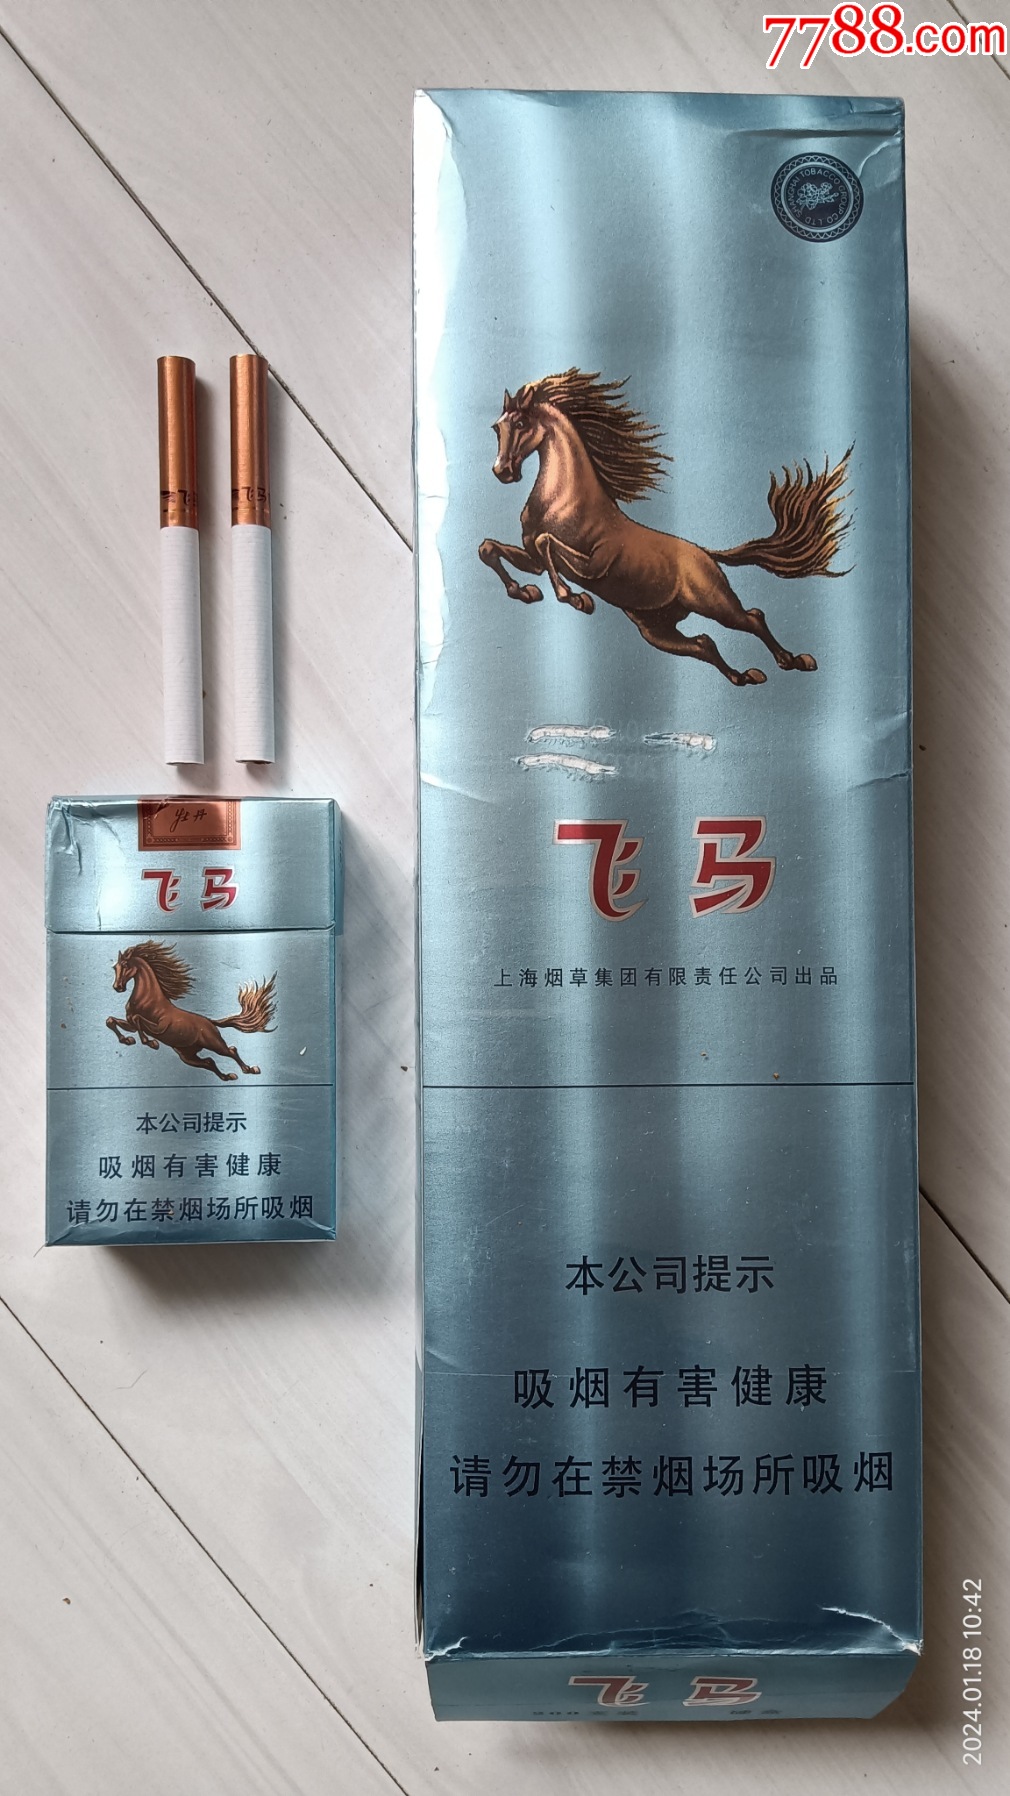 牡丹·飞马84mm条盒烟标:16劝阻版,焦10,含一空盒,带两支烟,上海烟草